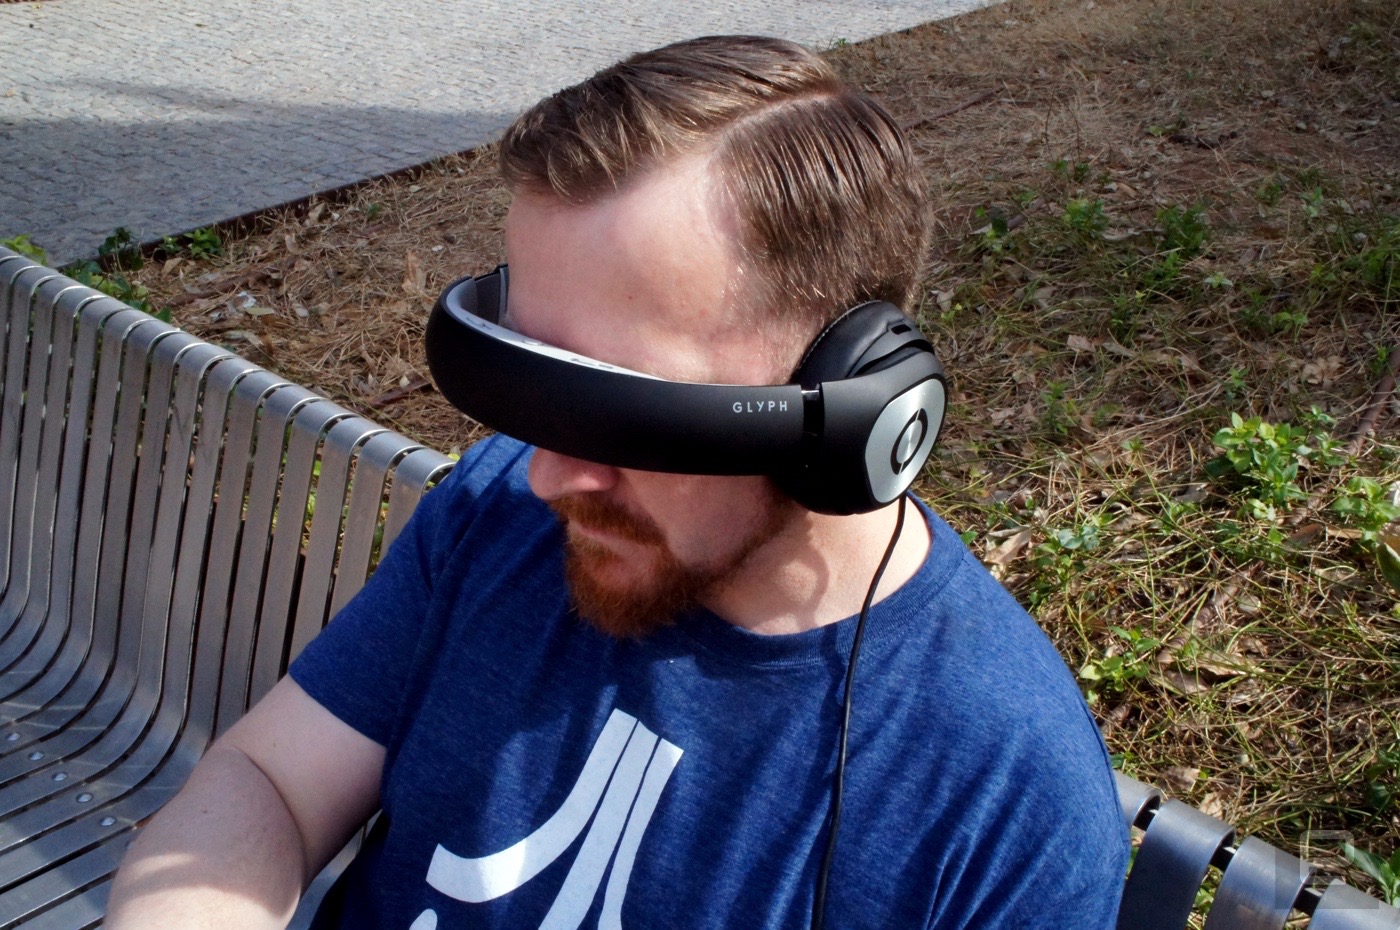 Avegant Glyph AG101 VR Headset Power 3D Mobile Theater 